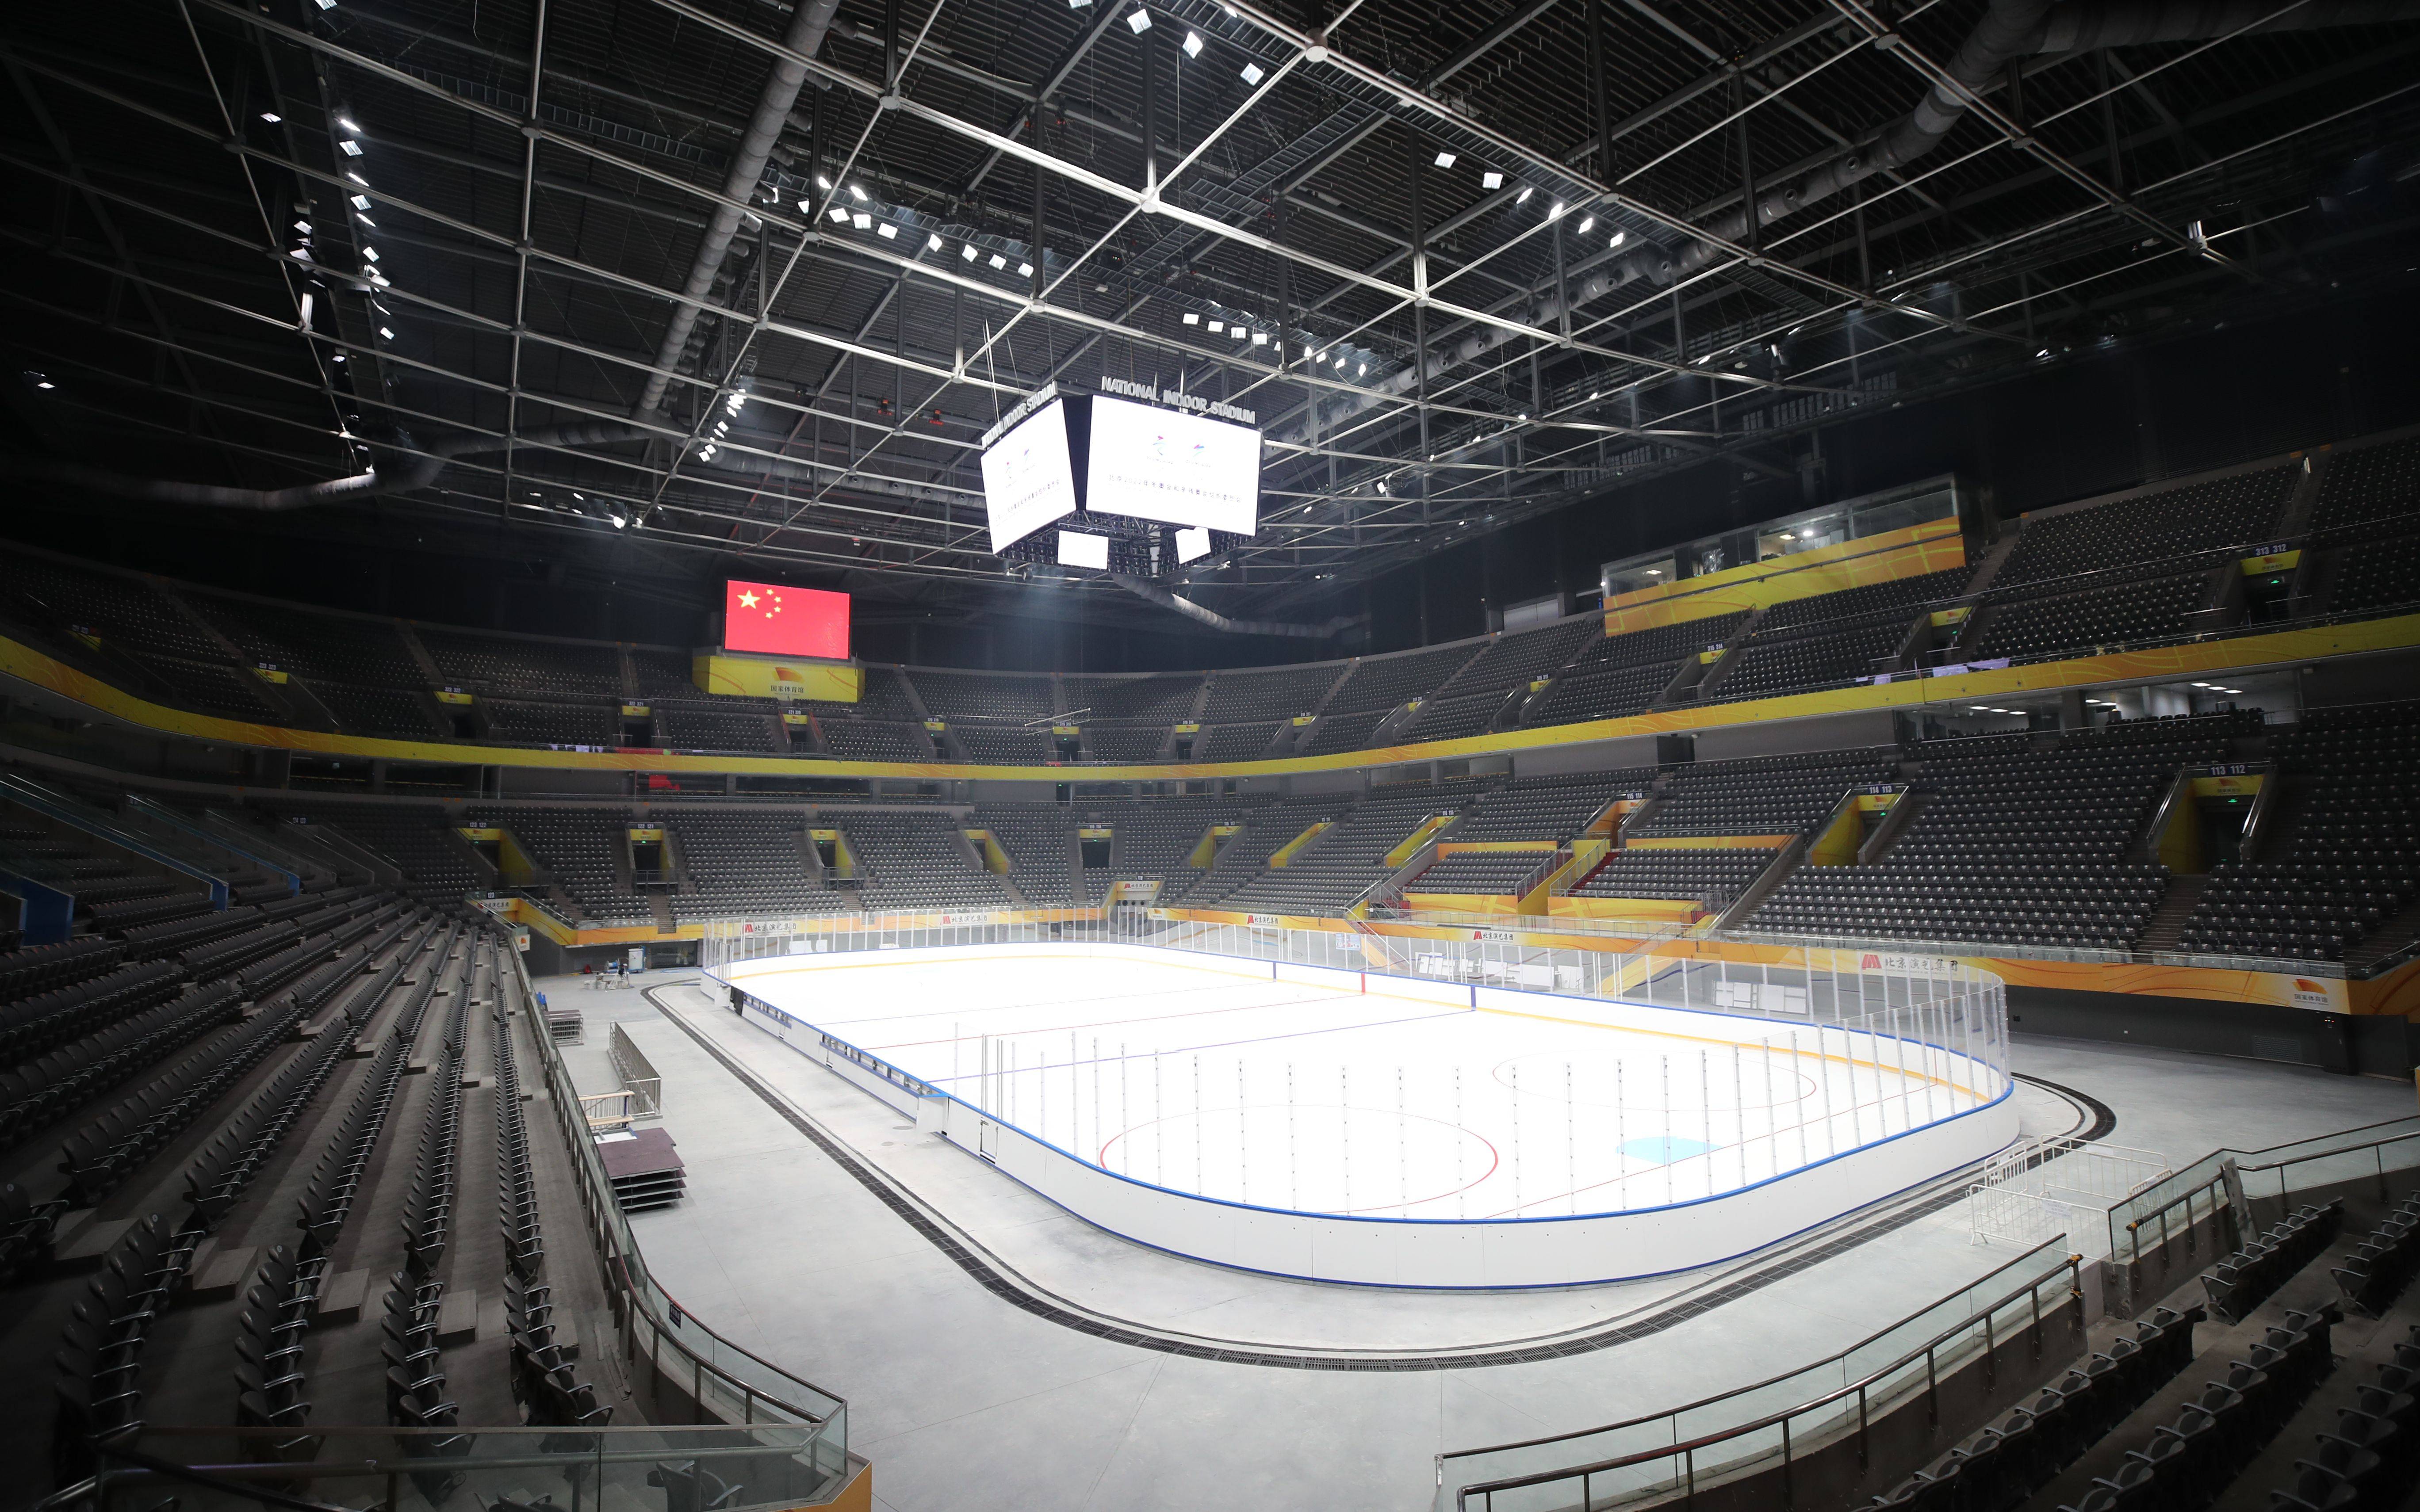 国家体育馆完成首次制冰,冬奥时将承接冰球比赛项目